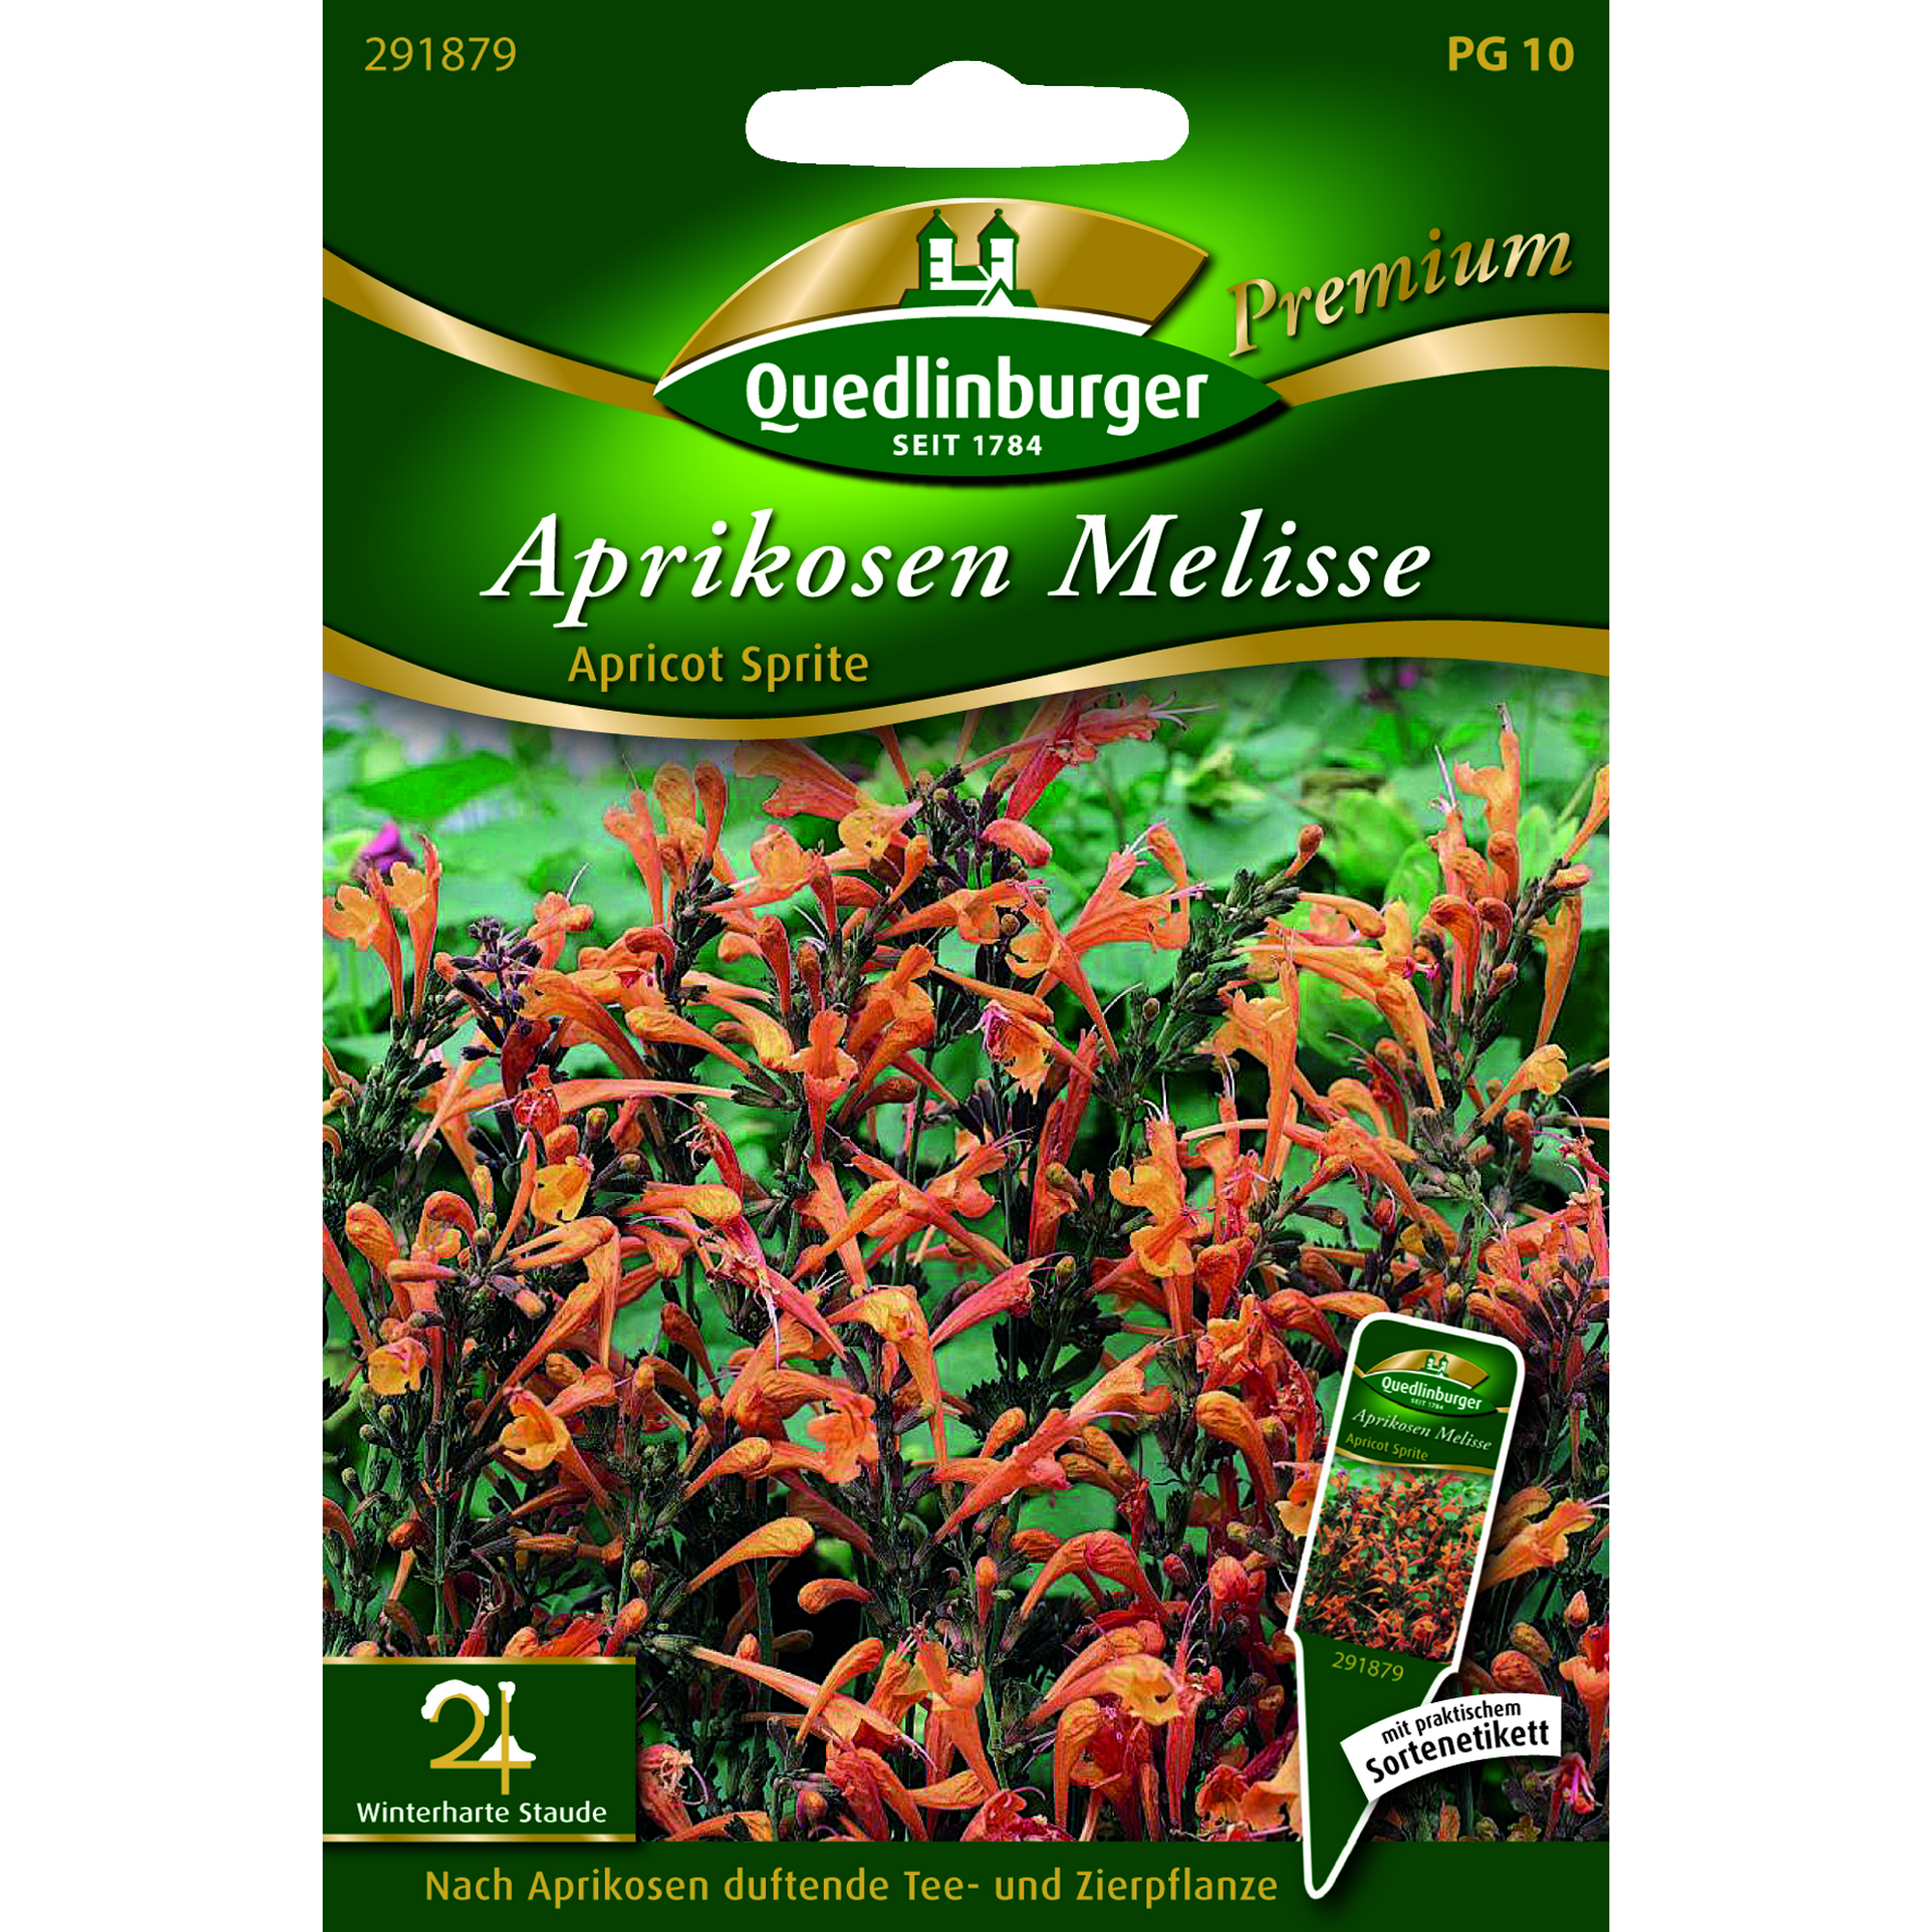 Premium Aprikosen Melisse 'Apricote Sprite' + product picture